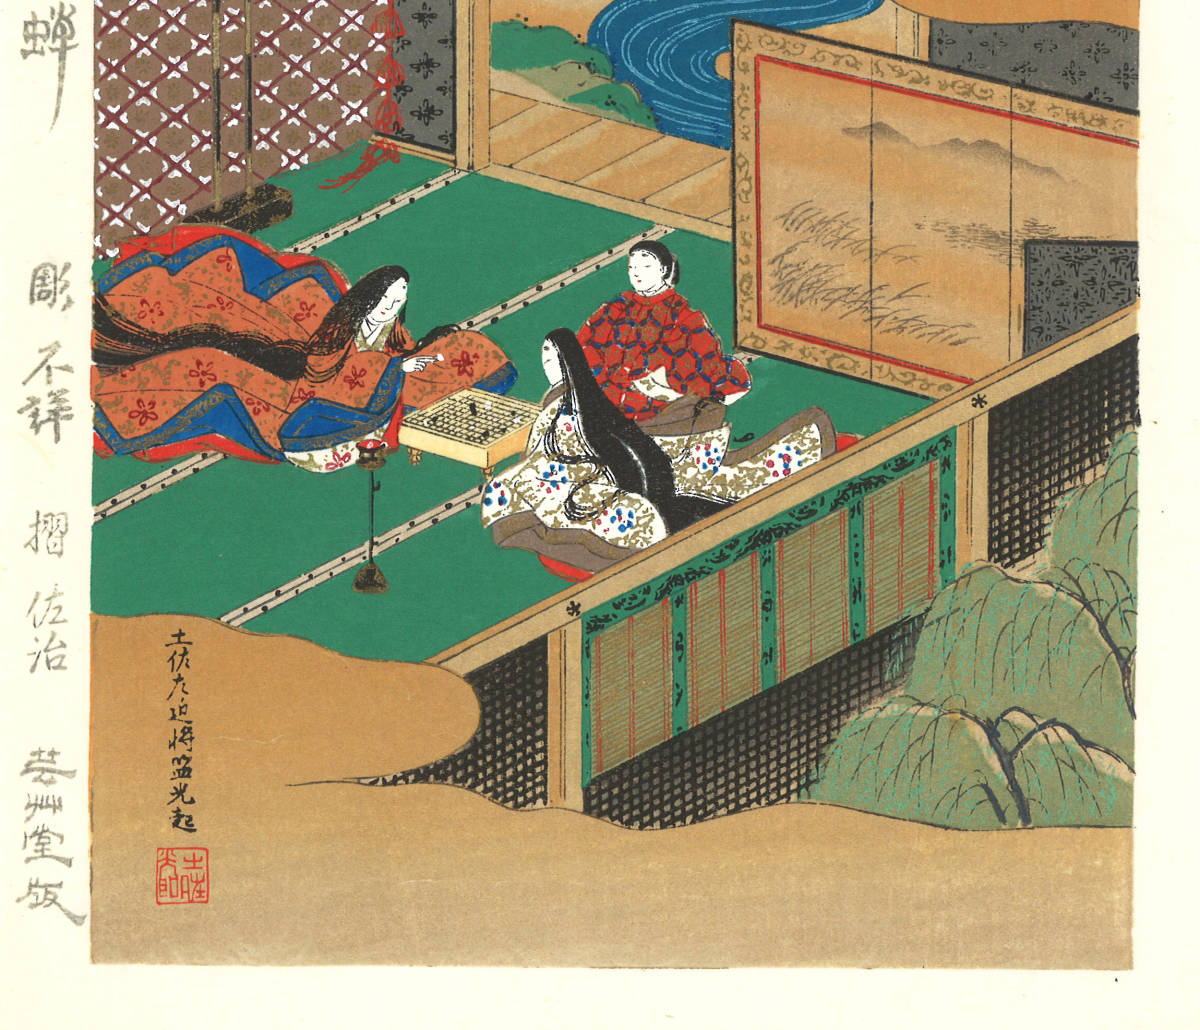 土佐光起 (Tosa Mitsuoki) 木版画 源氏物語 No14 空蝉 初版 幕末 一流の摺師の技による貴重な作品を是非ご堪能下さい